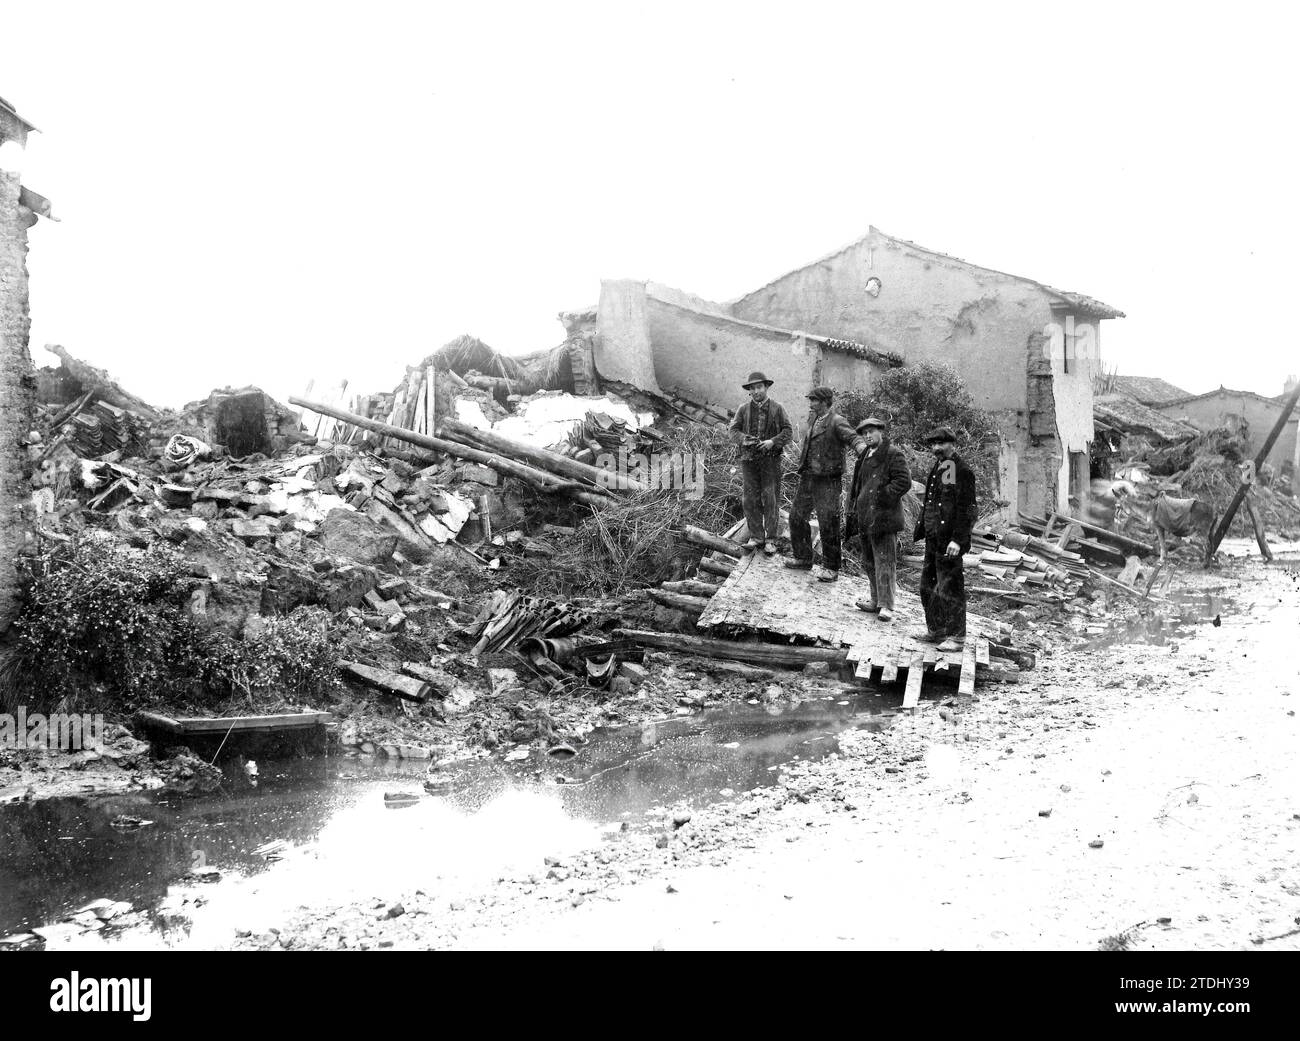 12/31/1909. The Floods in Villanueva de Azoague (Zamora). Some Neighbors Contemplating the Ruins of Their Homes. Credit: Album / Archivo ABC / León e Hijo Stock Photo